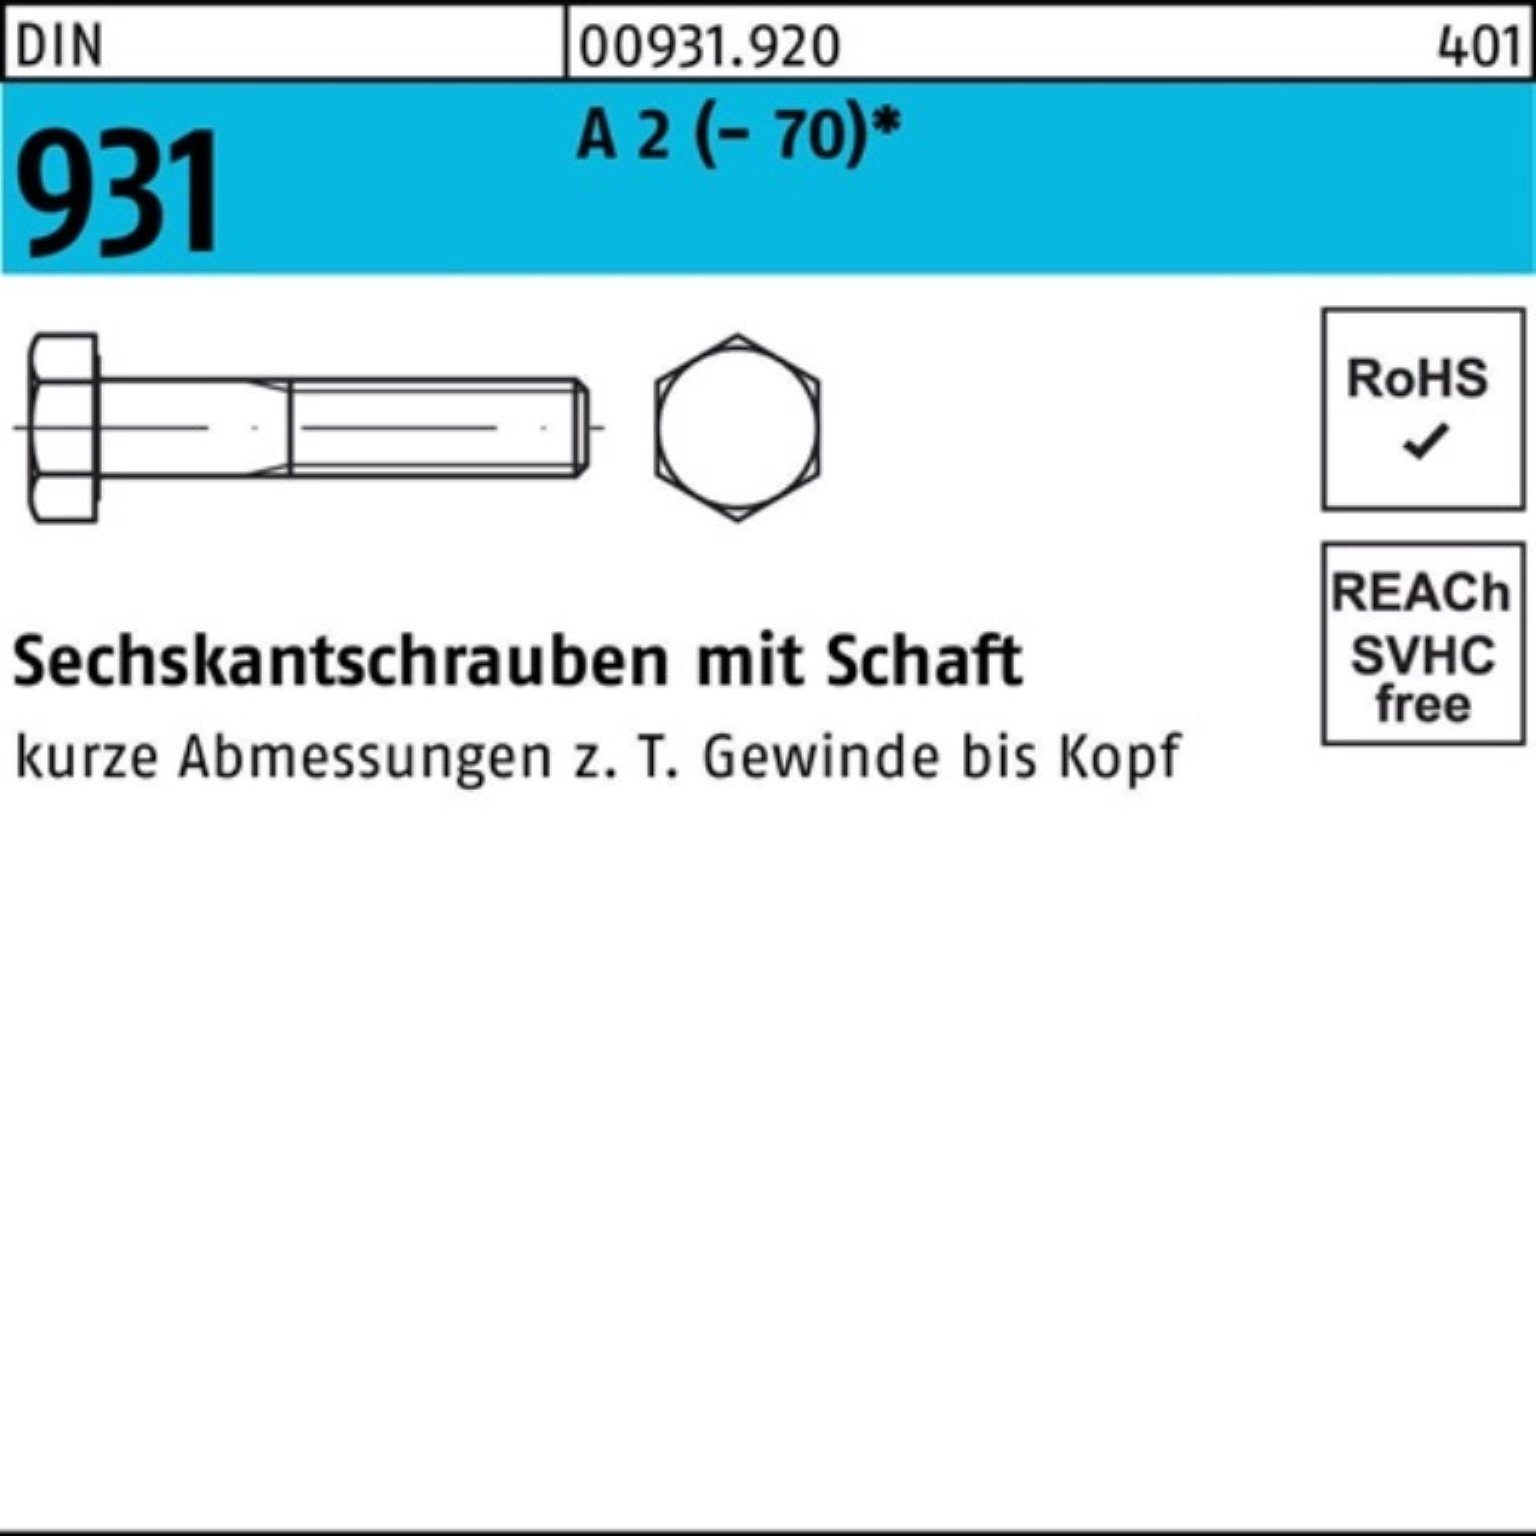 Reyher Pack Sechskantschraube (70) 931 Stü 2 Sechskantschraube M33x 100er DIN A Schaft 1 110